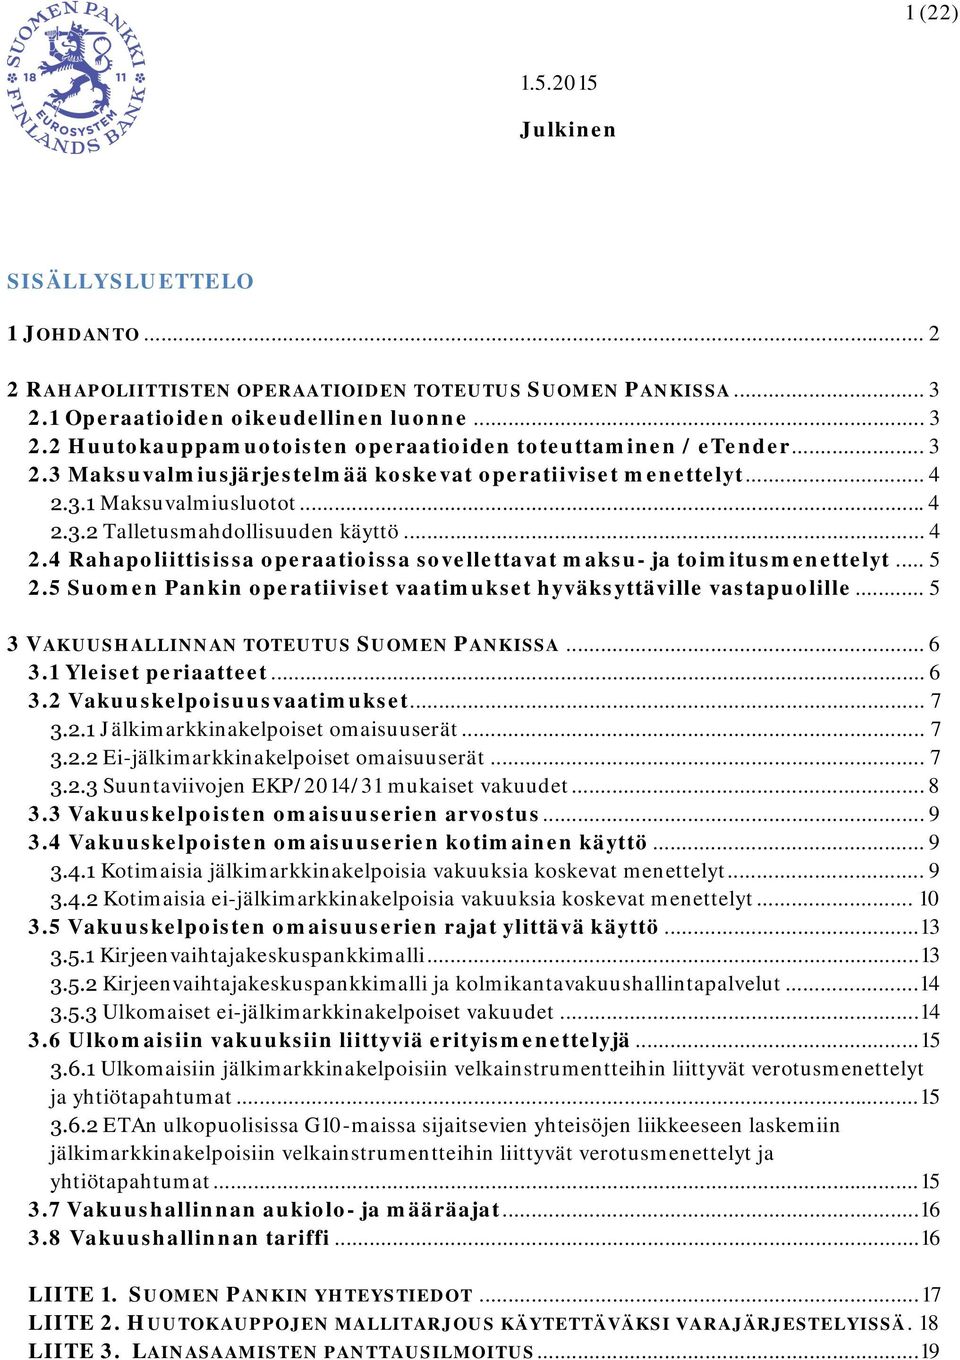 4 Rahapoliittisissa operaatioissa sovellettavat maksu- ja toimitusmenettelyt... 5 2.5 Suomen Pankin operatiiviset vaatimukset hyväksyttäville vastapuolille.